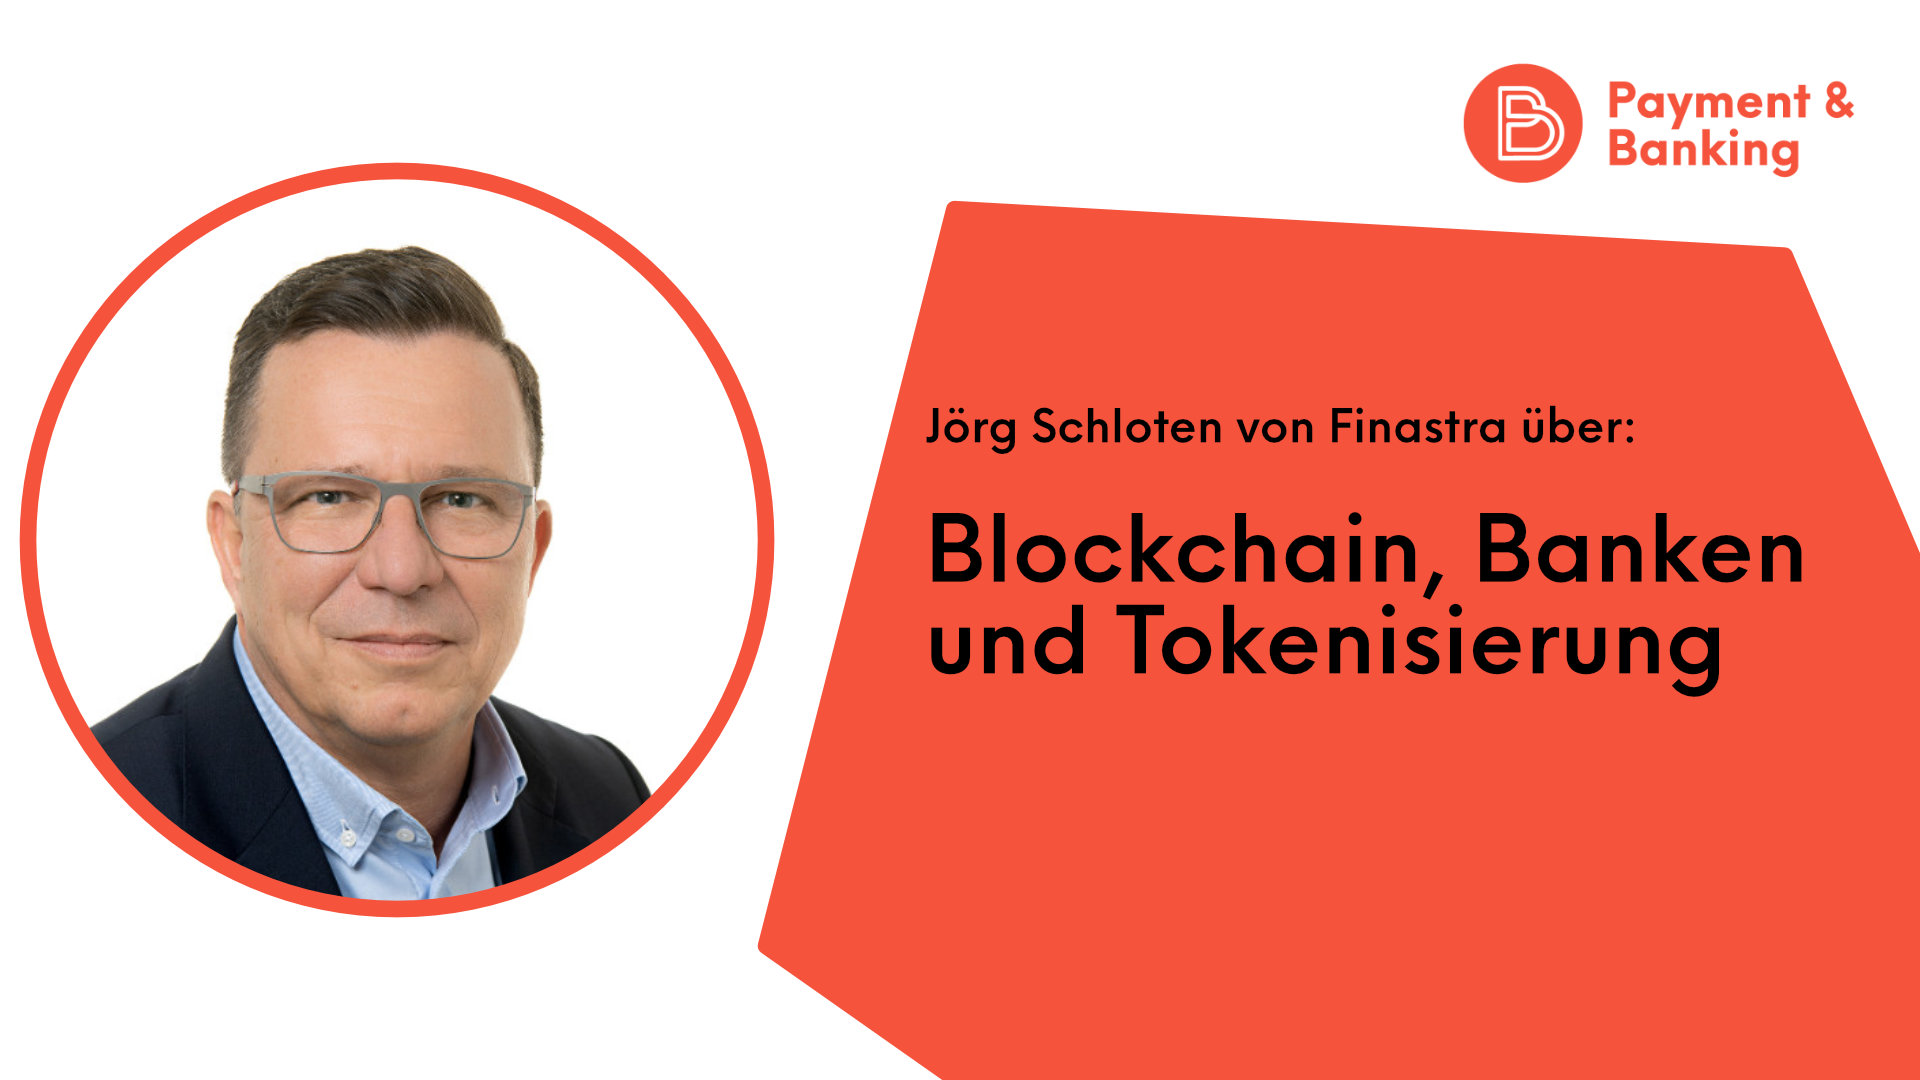 Jörg Schloten von Finastra über Blockchain, Banken und Tokenisierung